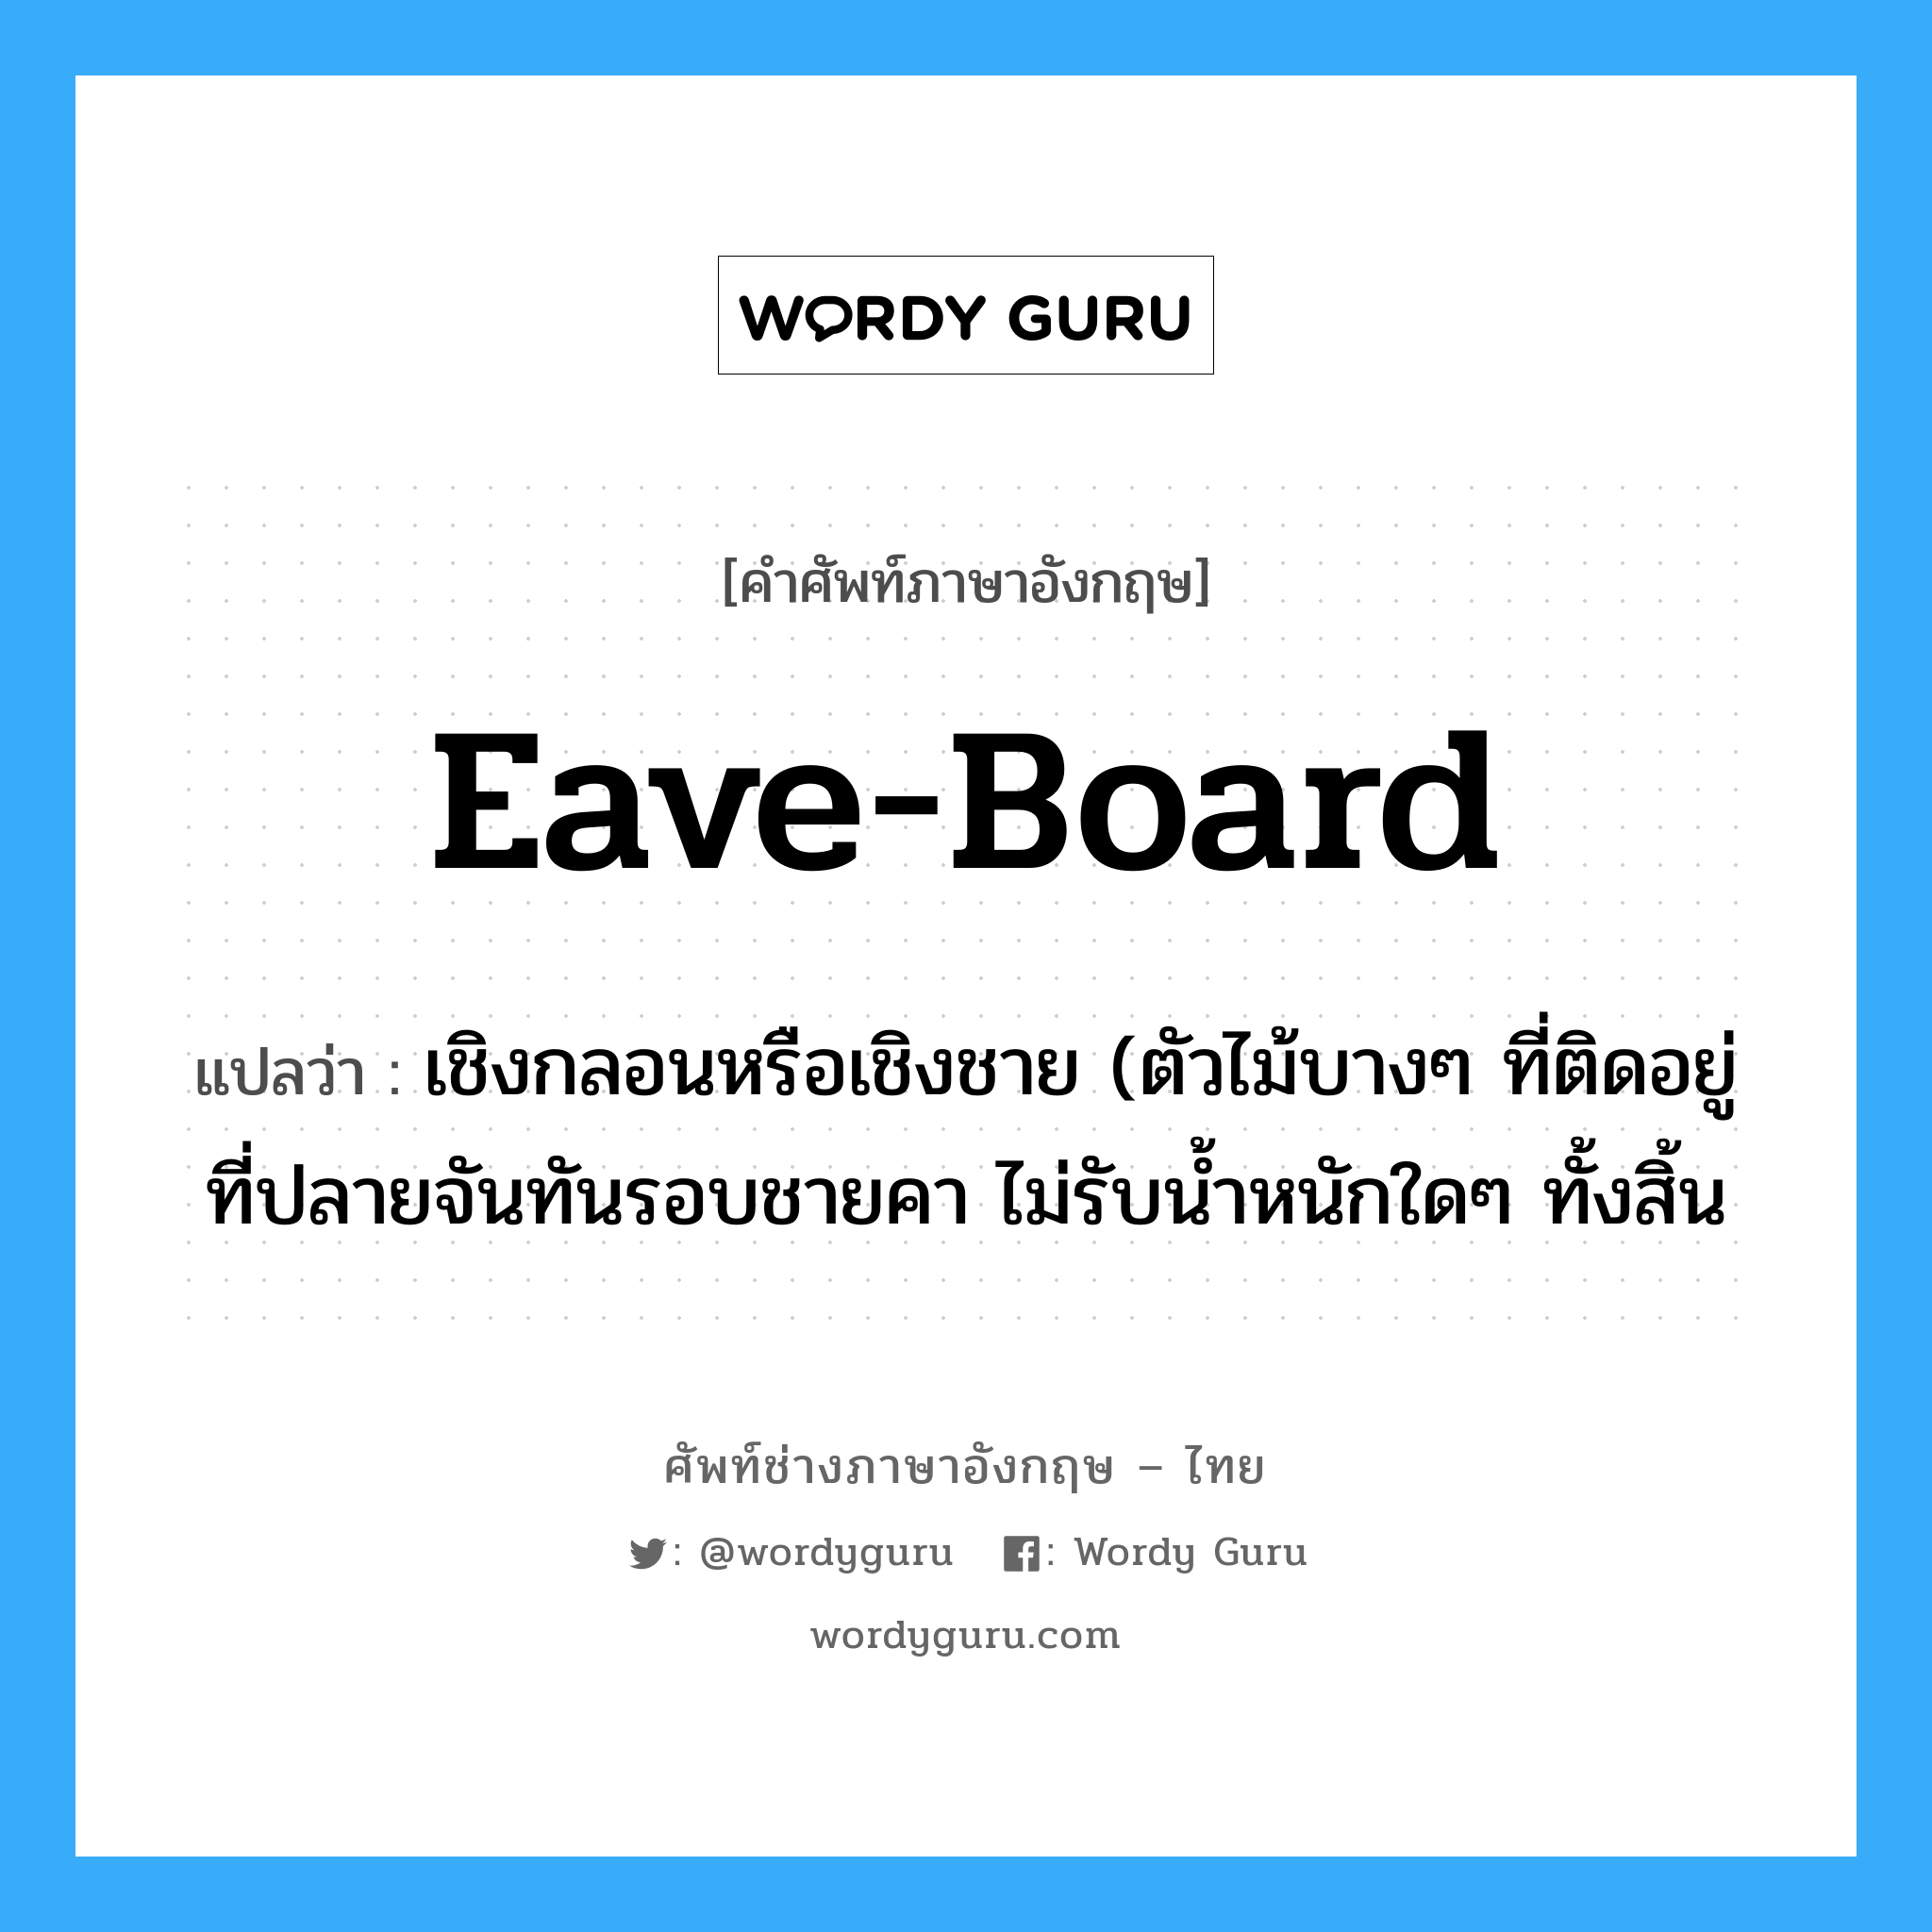 eave-board แปลว่า?, คำศัพท์ช่างภาษาอังกฤษ - ไทย eave-board คำศัพท์ภาษาอังกฤษ eave-board แปลว่า เชิงกลอนหรือเชิงชาย (ตัวไม้บางๆ ที่ติดอยู่ที่ปลายจันทันรอบชายคา ไม่รับน้ำหนักใดๆ ทั้งสิ้น